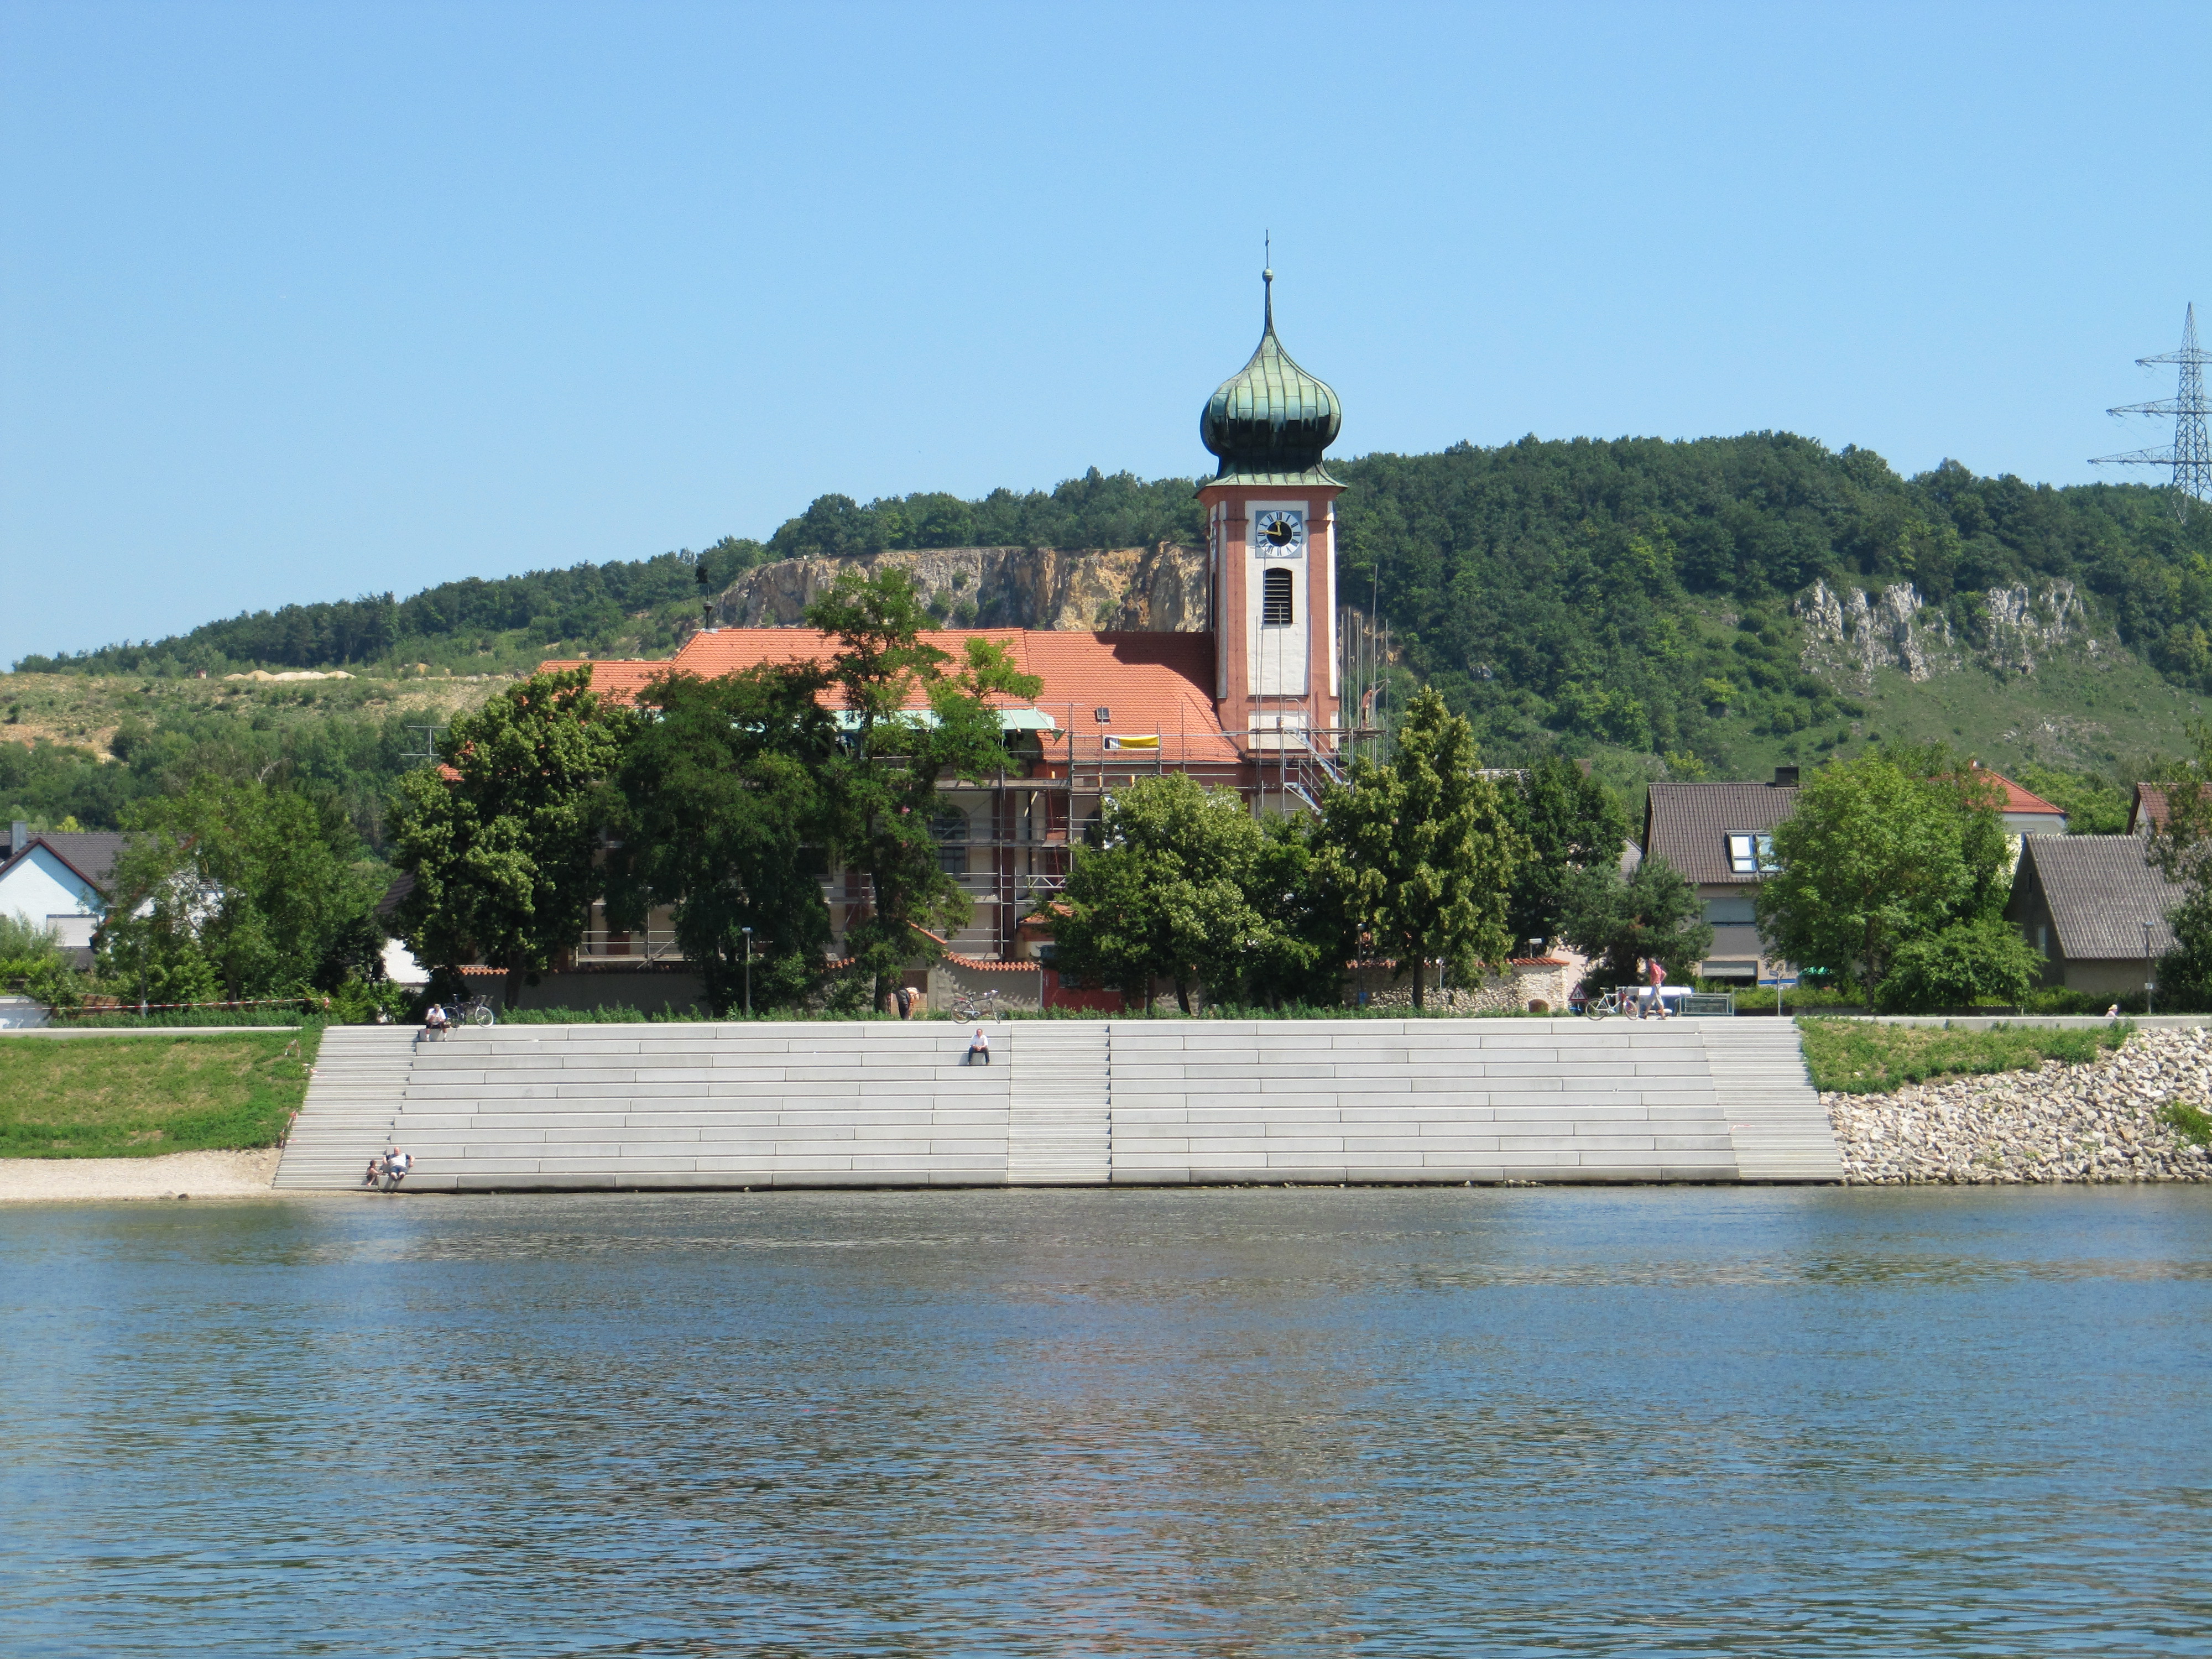 Die Donau im Vordergrund, dahinter die Treppenanlage aus Beton mit vier darauf sitzenden Personen. Im Hintergrund eine Laubbaumreihe und die eingerüstete Schwabelweiser Kirche